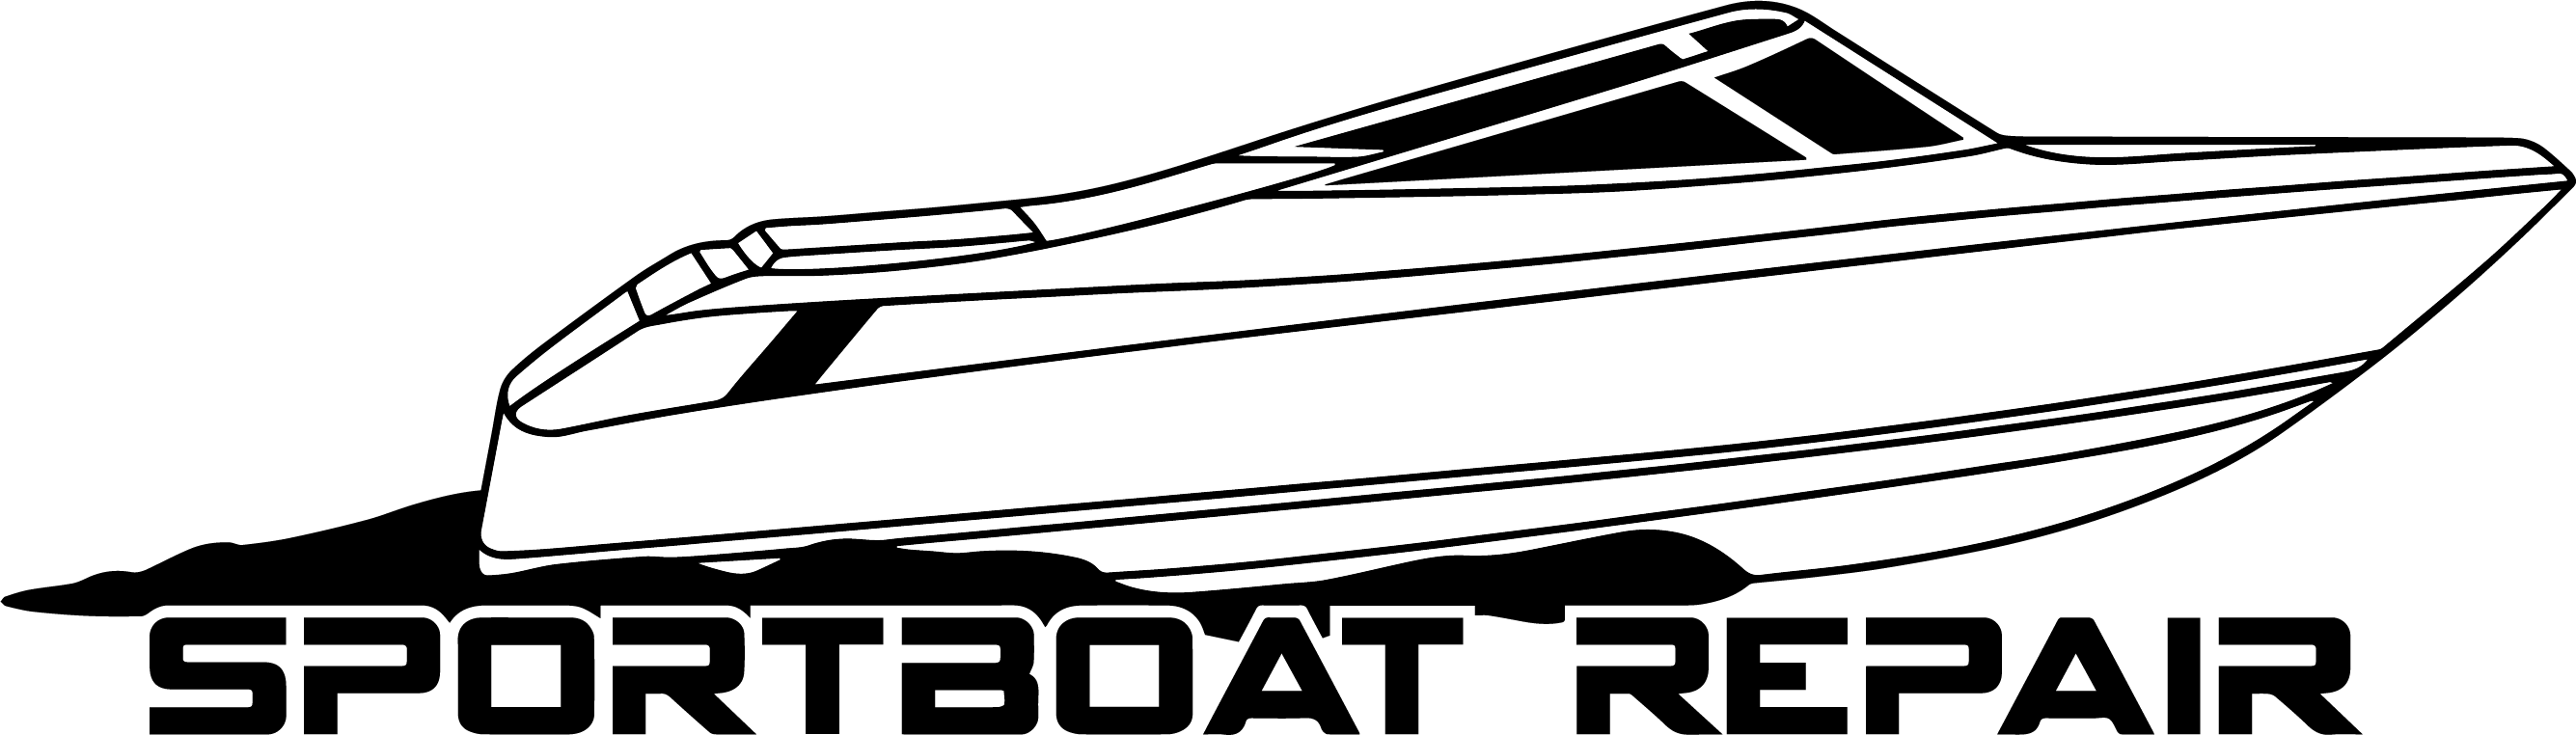 Sportboat-Repair_Logo_png_vectorized